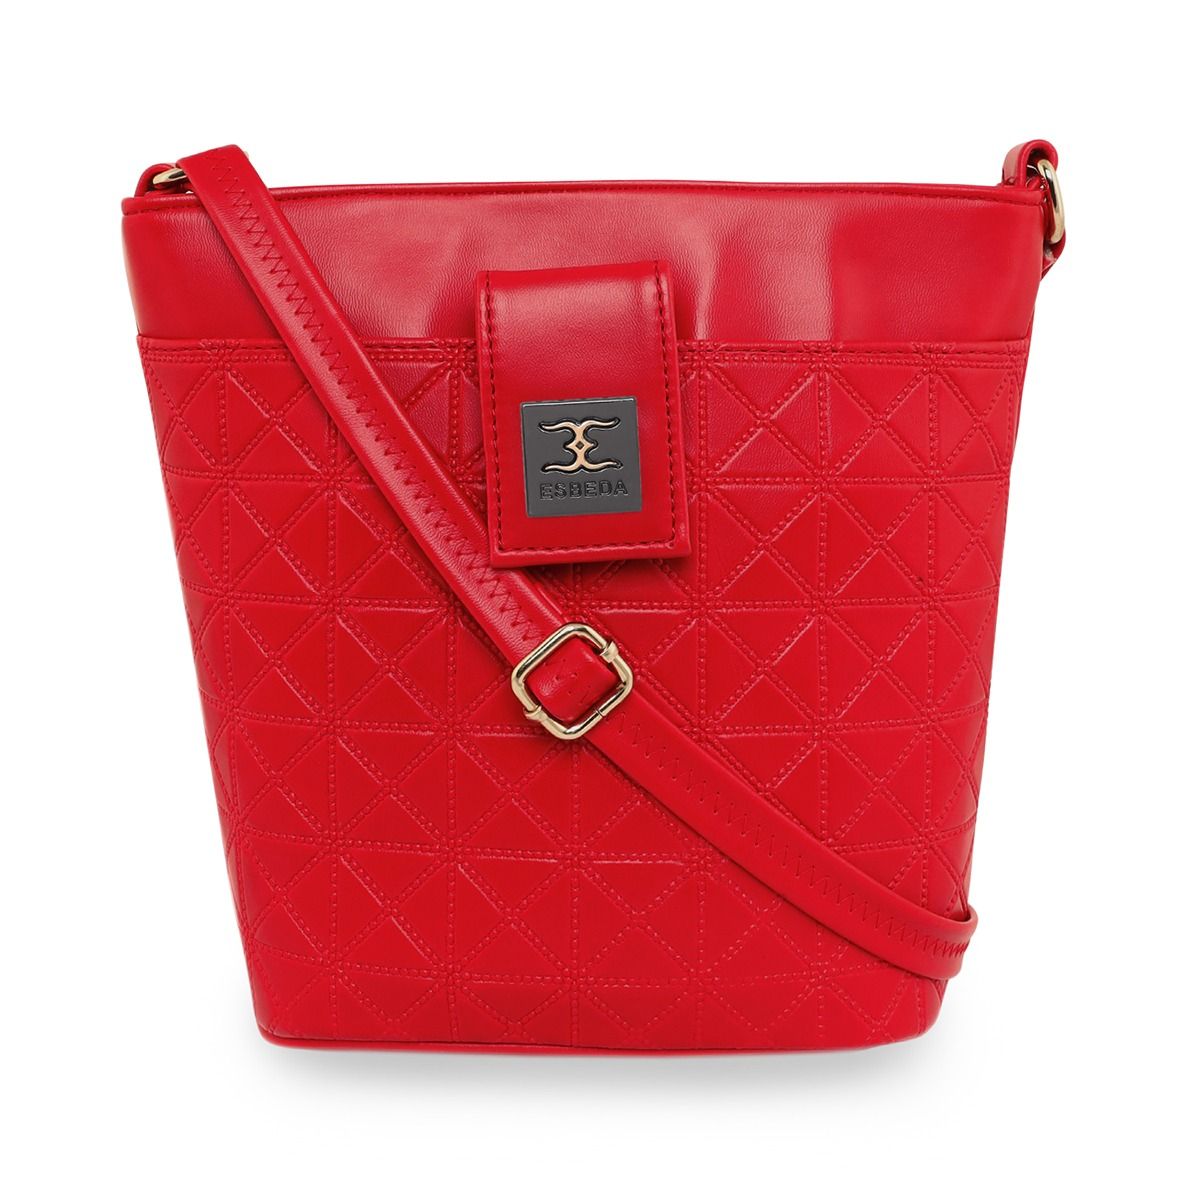 Buy ESBEDA Rose Gold Color Solid Pattern Top Handle Handbag for Women online